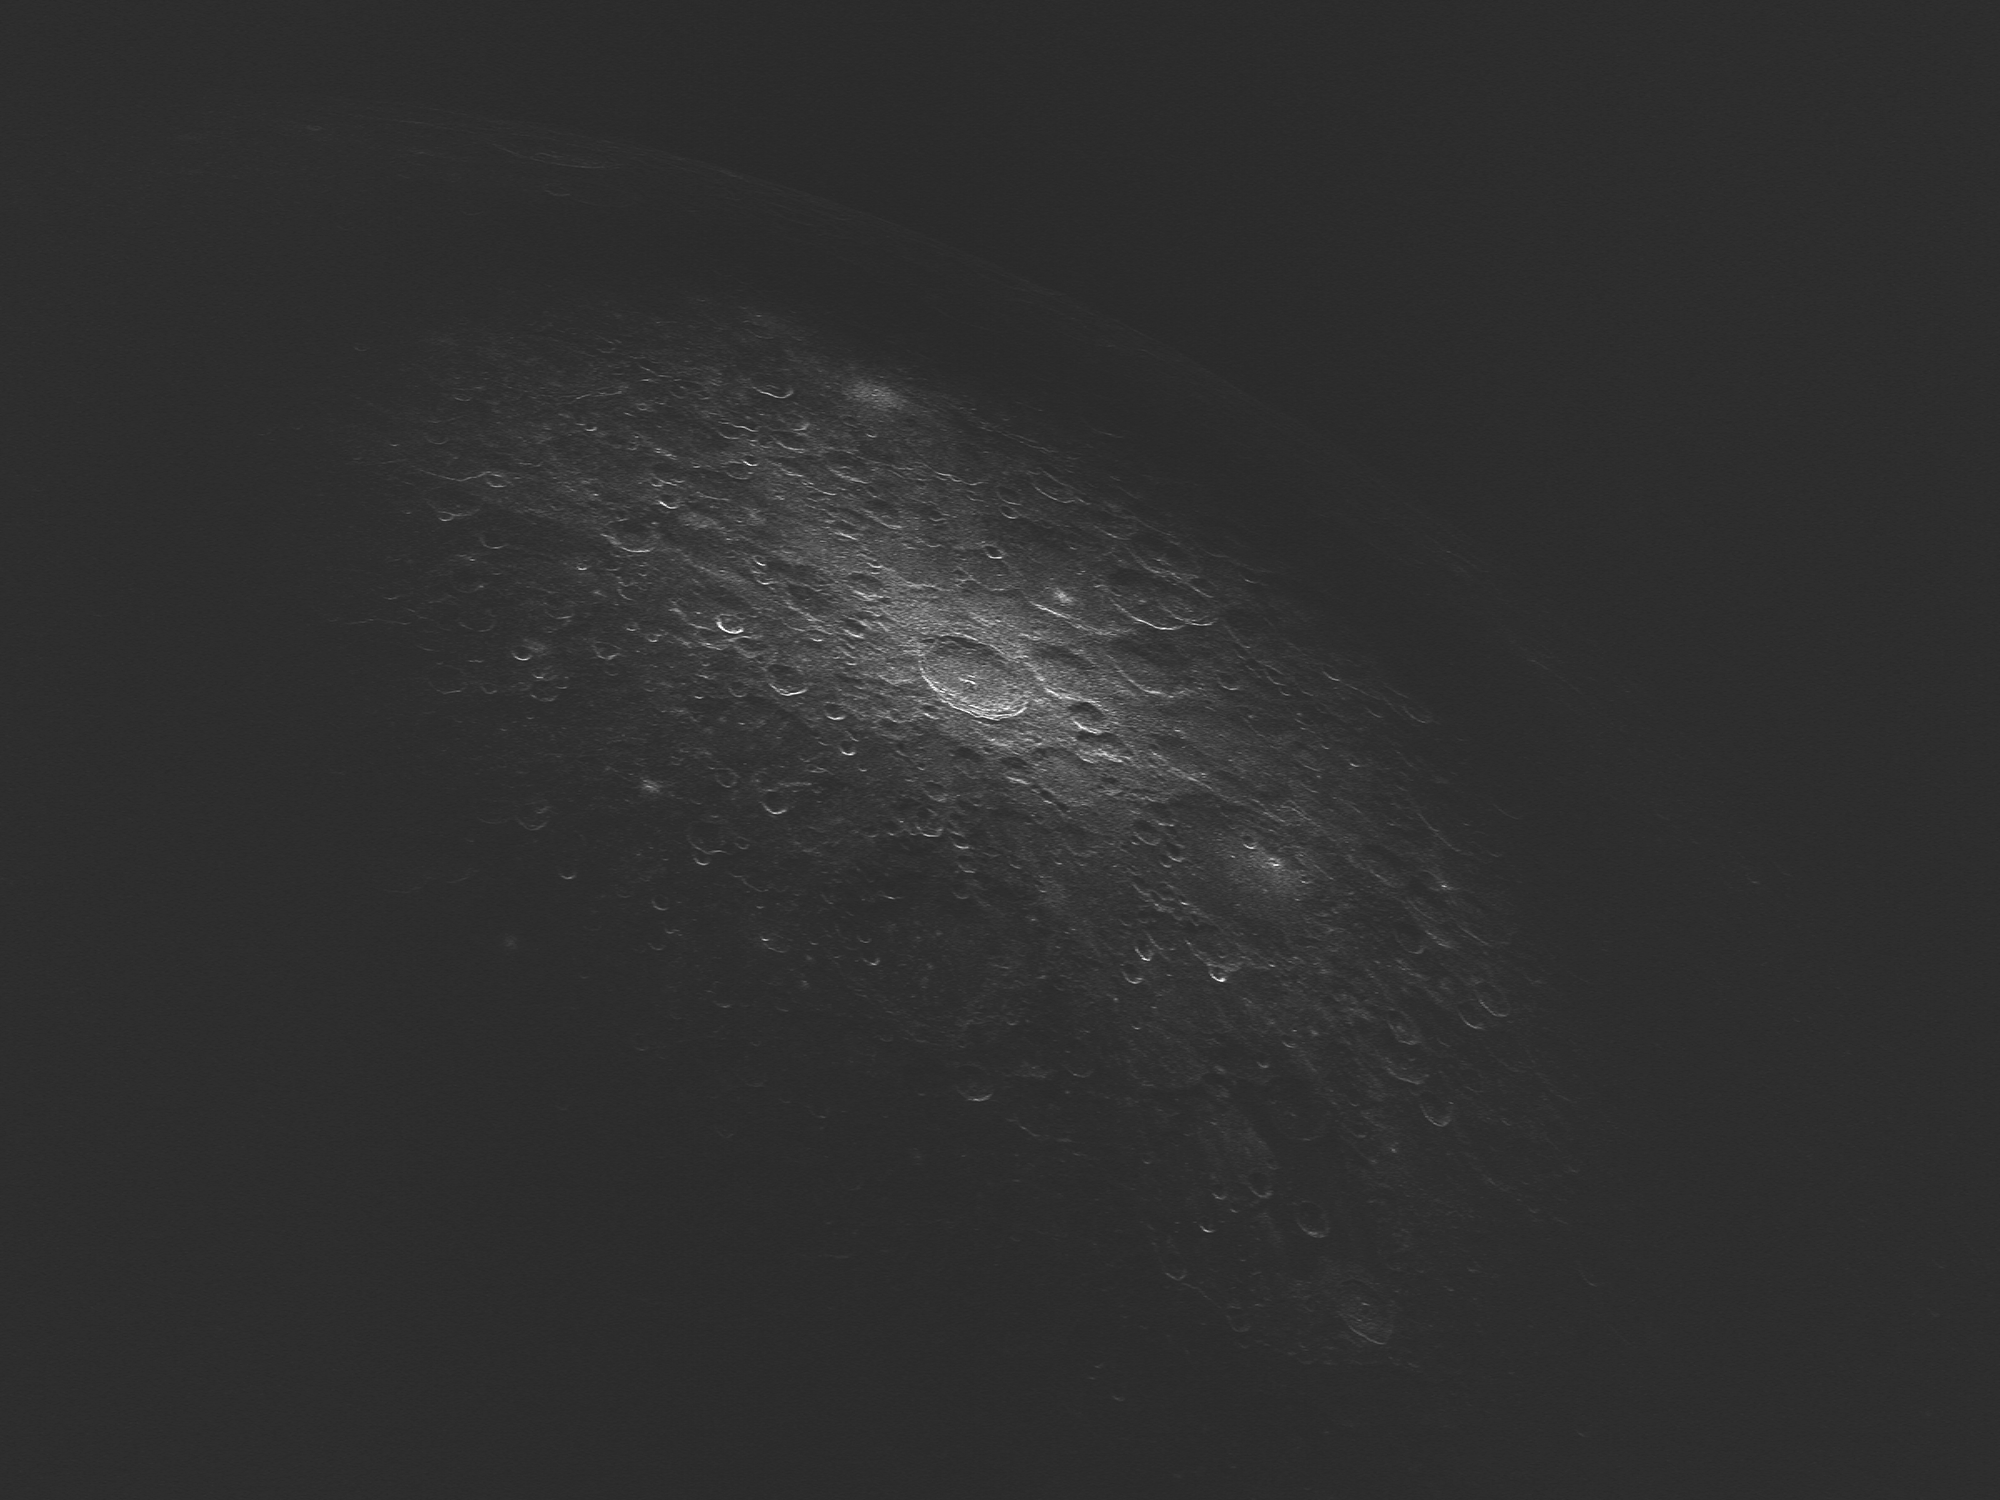 Диффузная компонента радиолокационного изображения кратера Тихо и его окрестностей на длине волны 4.2 см.